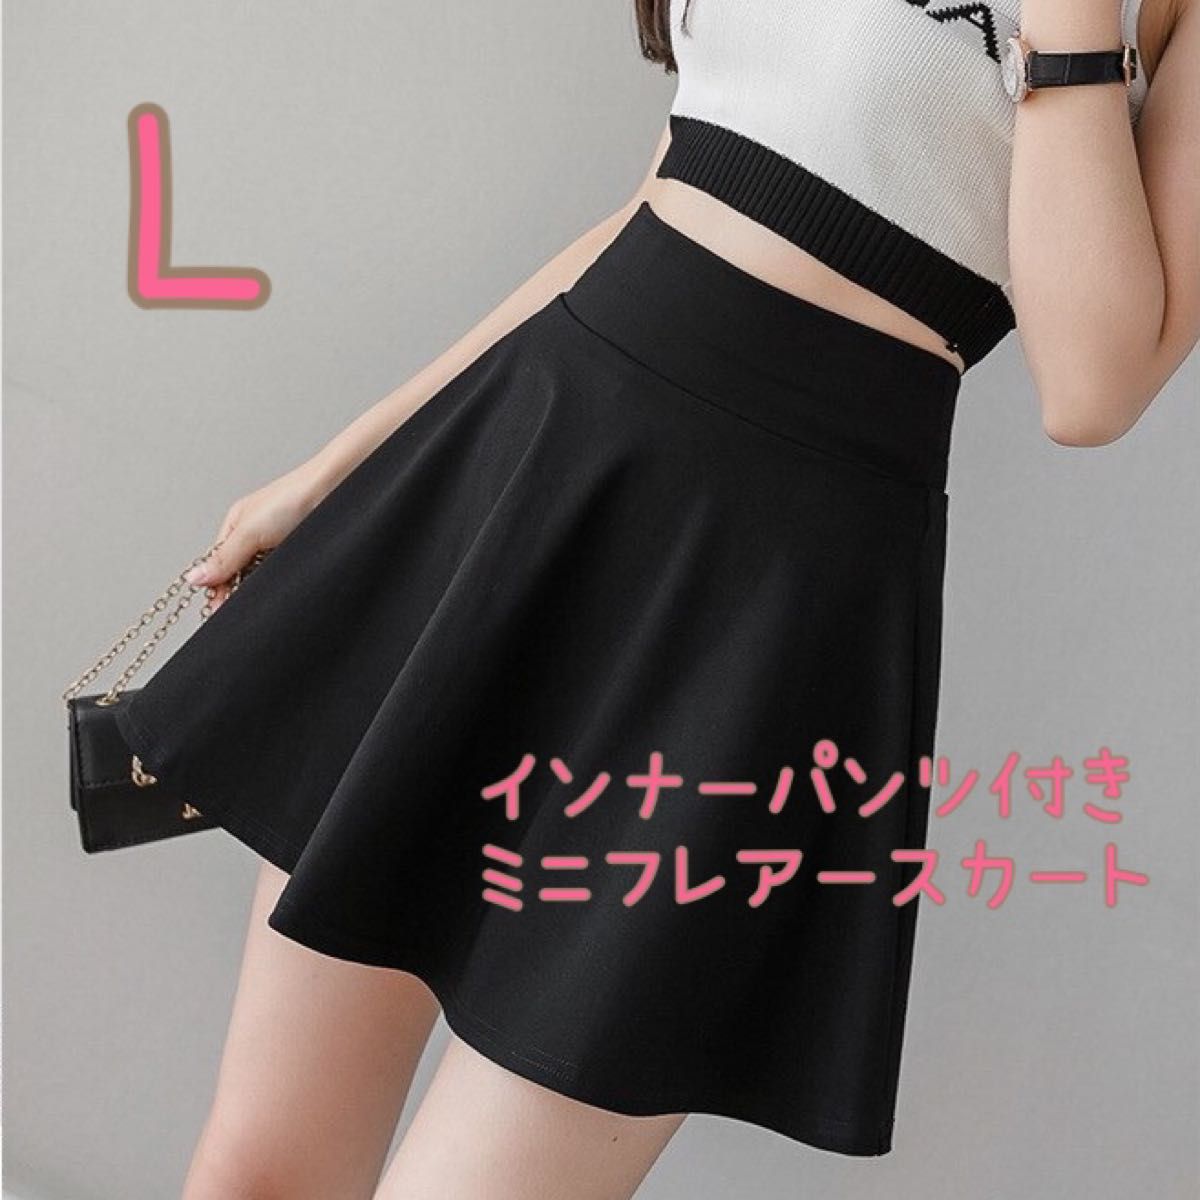 【新品】フレアミニスカート インナーパンツ付 黒 L 美脚  可愛いスカート セクシー